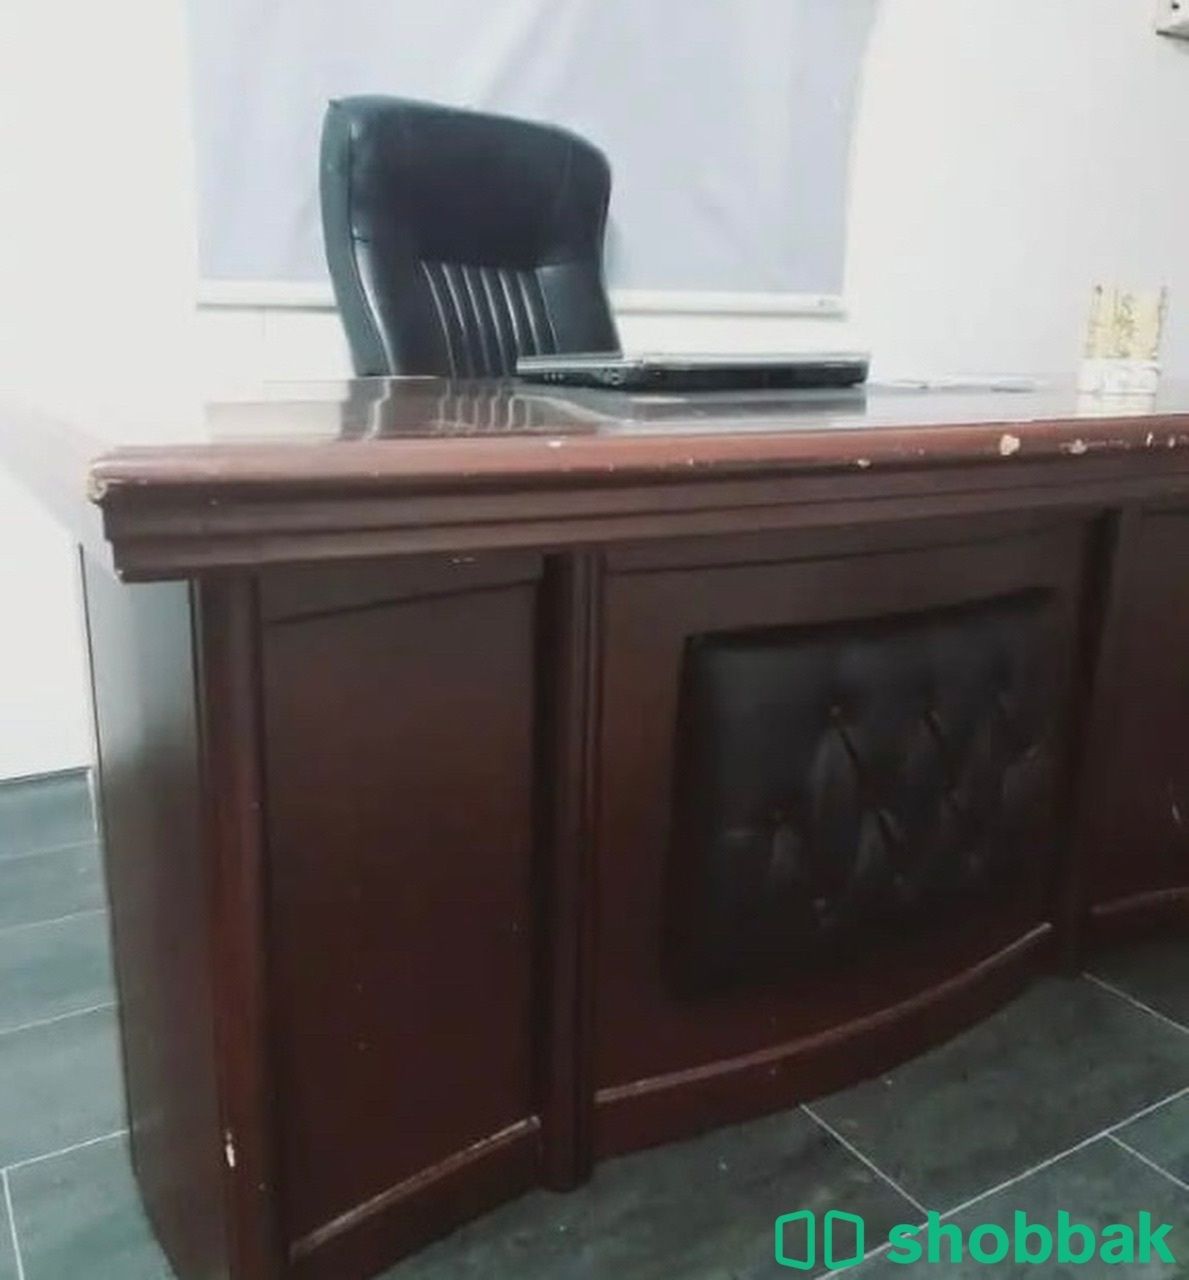 طاوله مكتبيه بدون كرسي  Shobbak Saudi Arabia